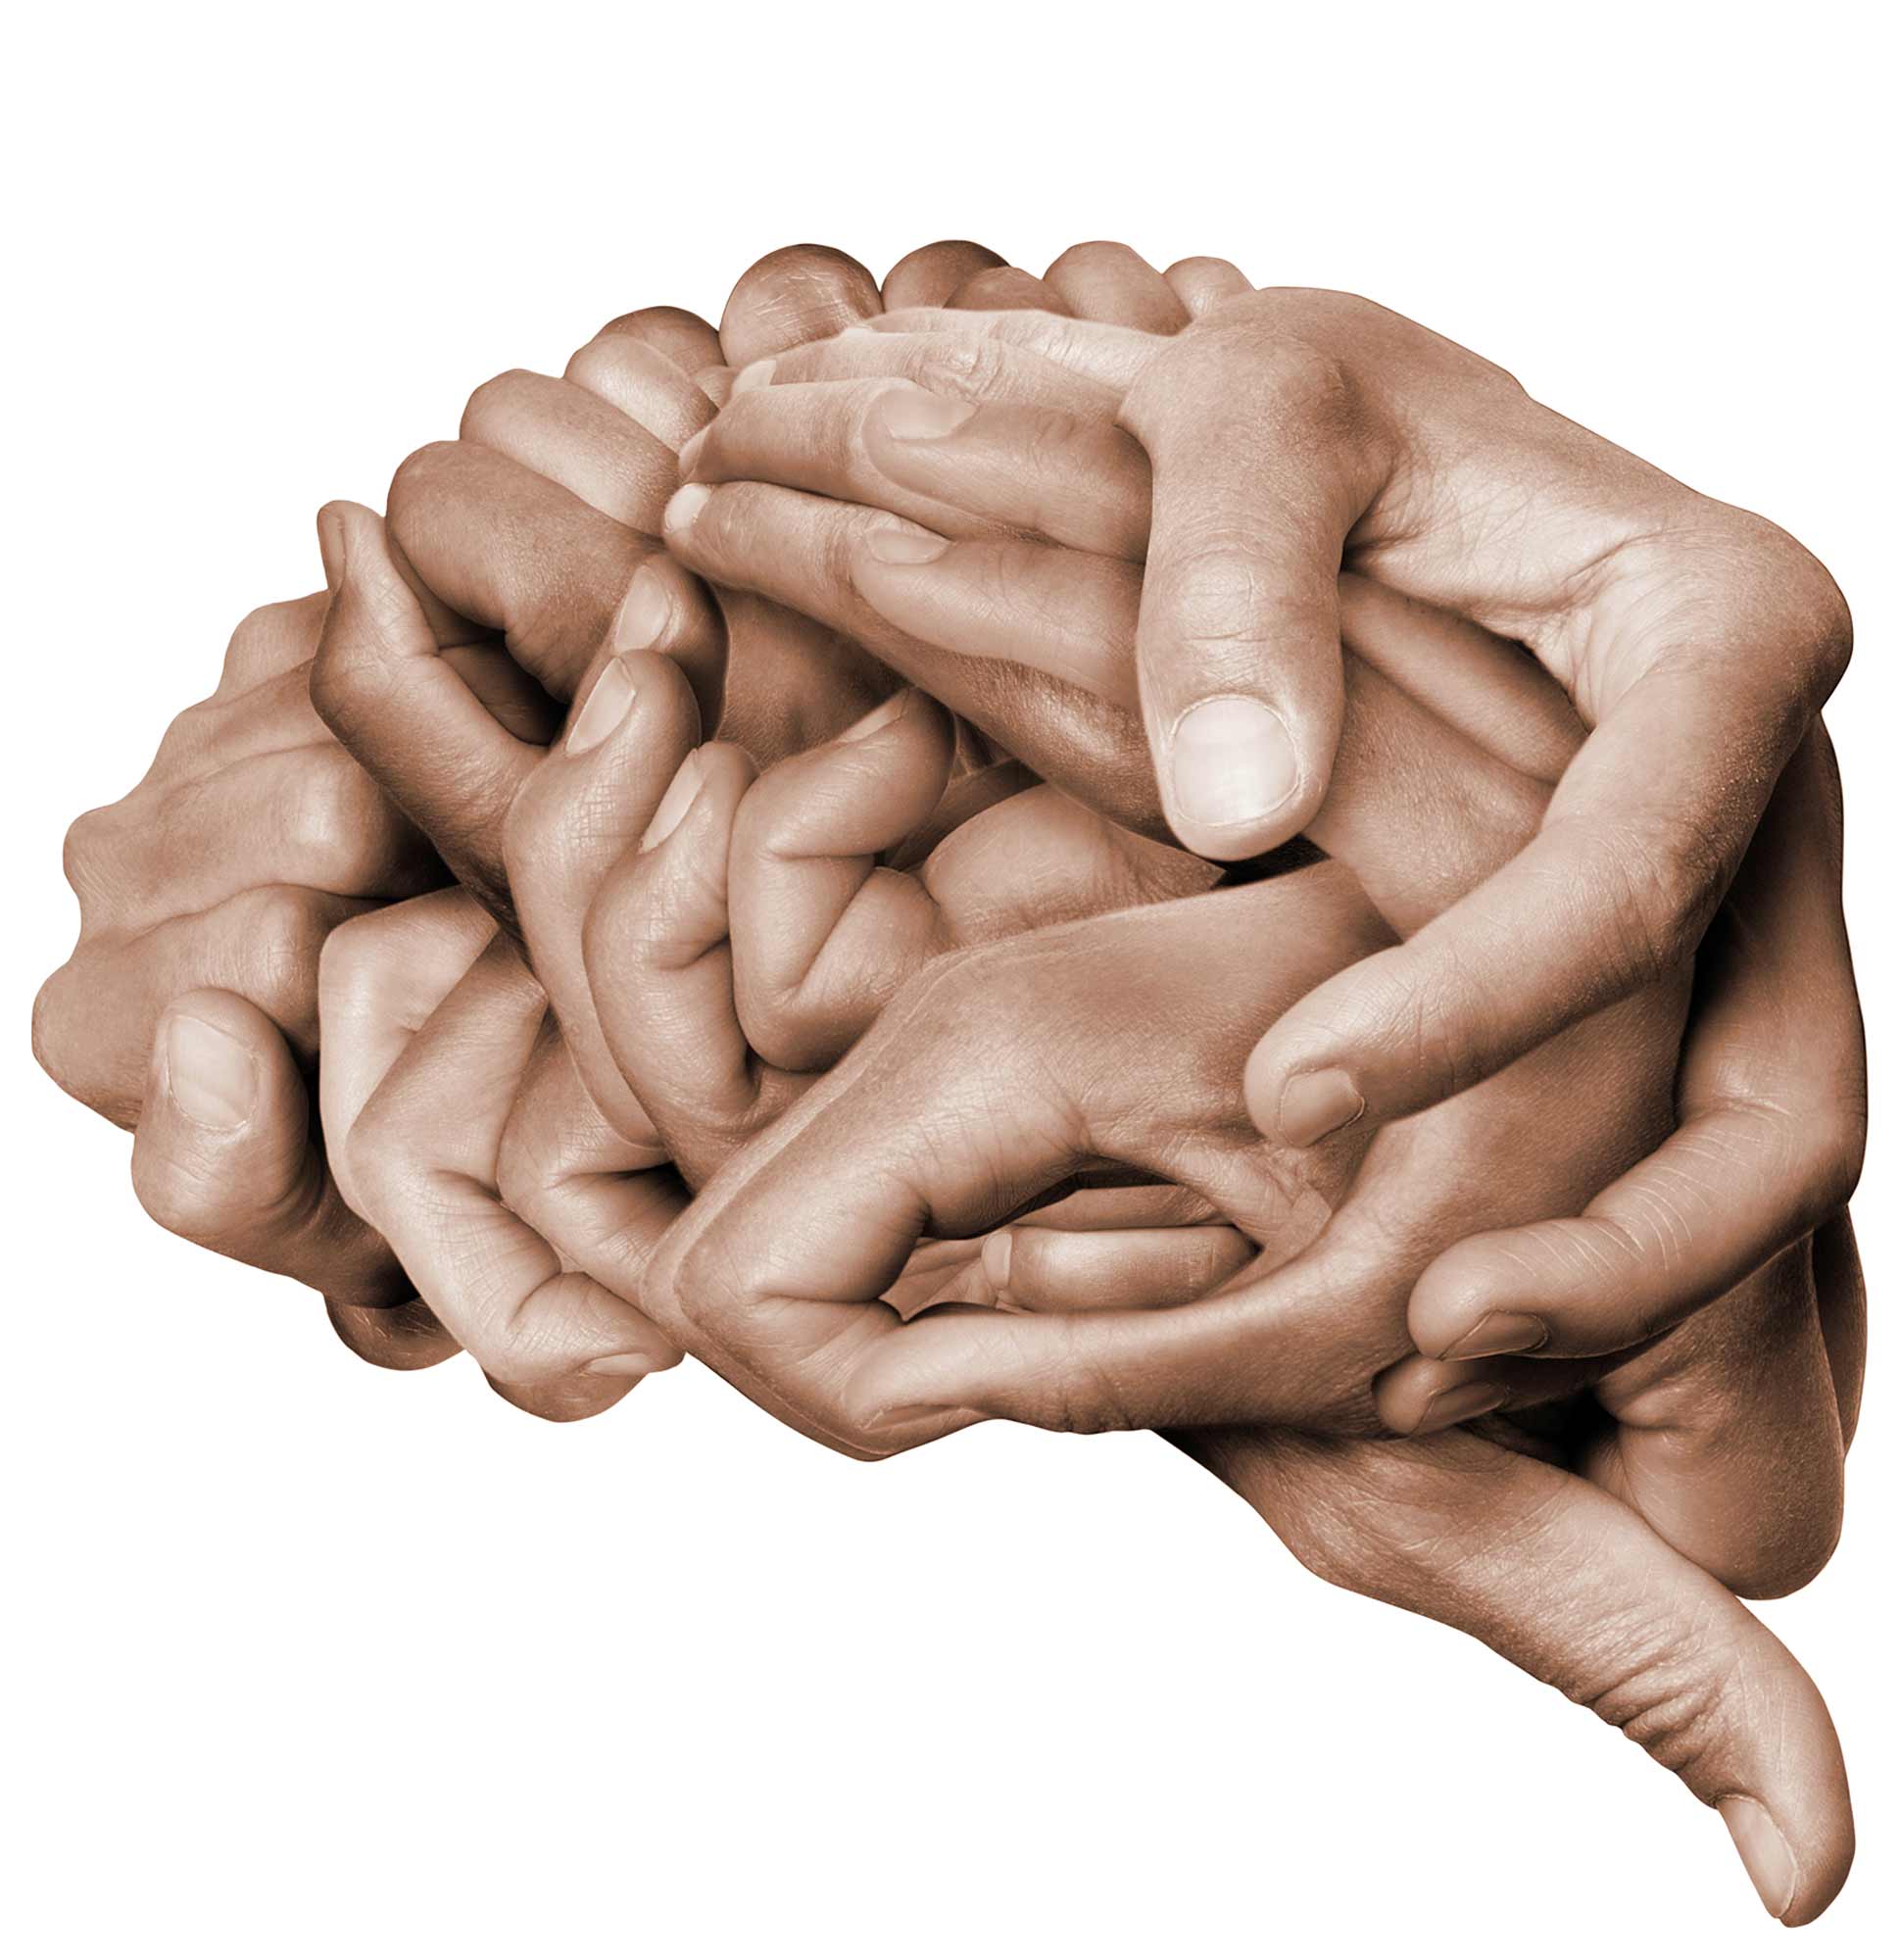 Viele Hände die derart ineinander greifen, dass die Form eines Gehirns entsteht.